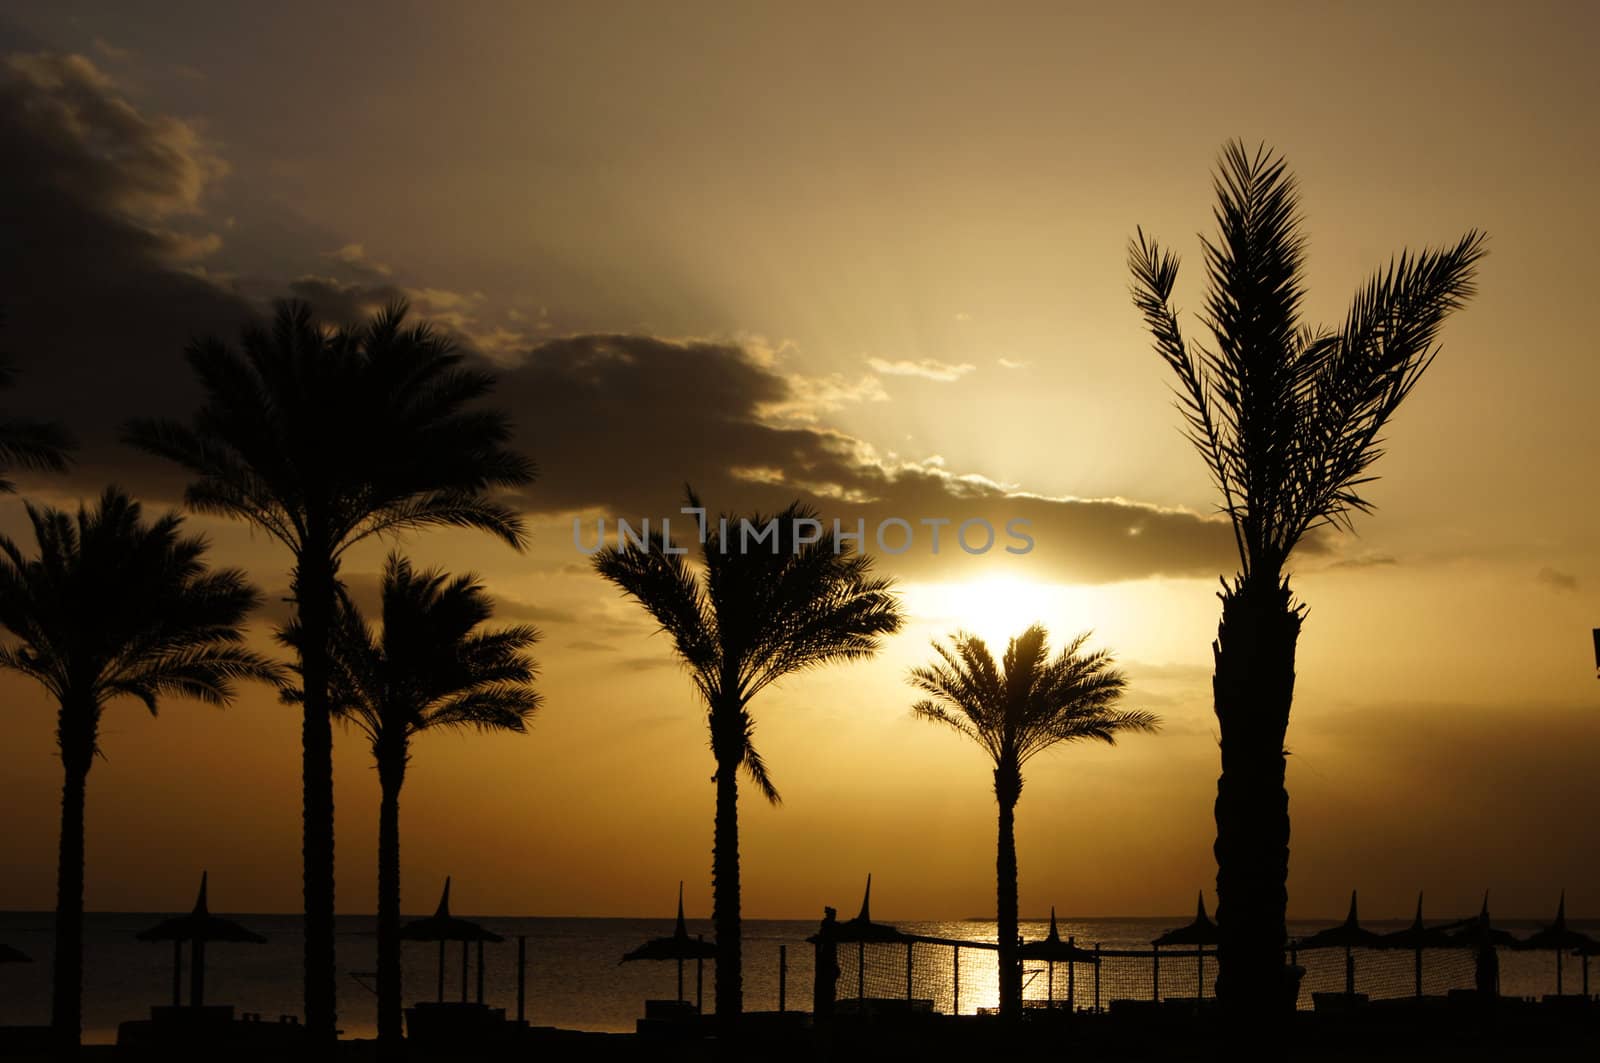 Sunrise over the Red sea egyptian coast